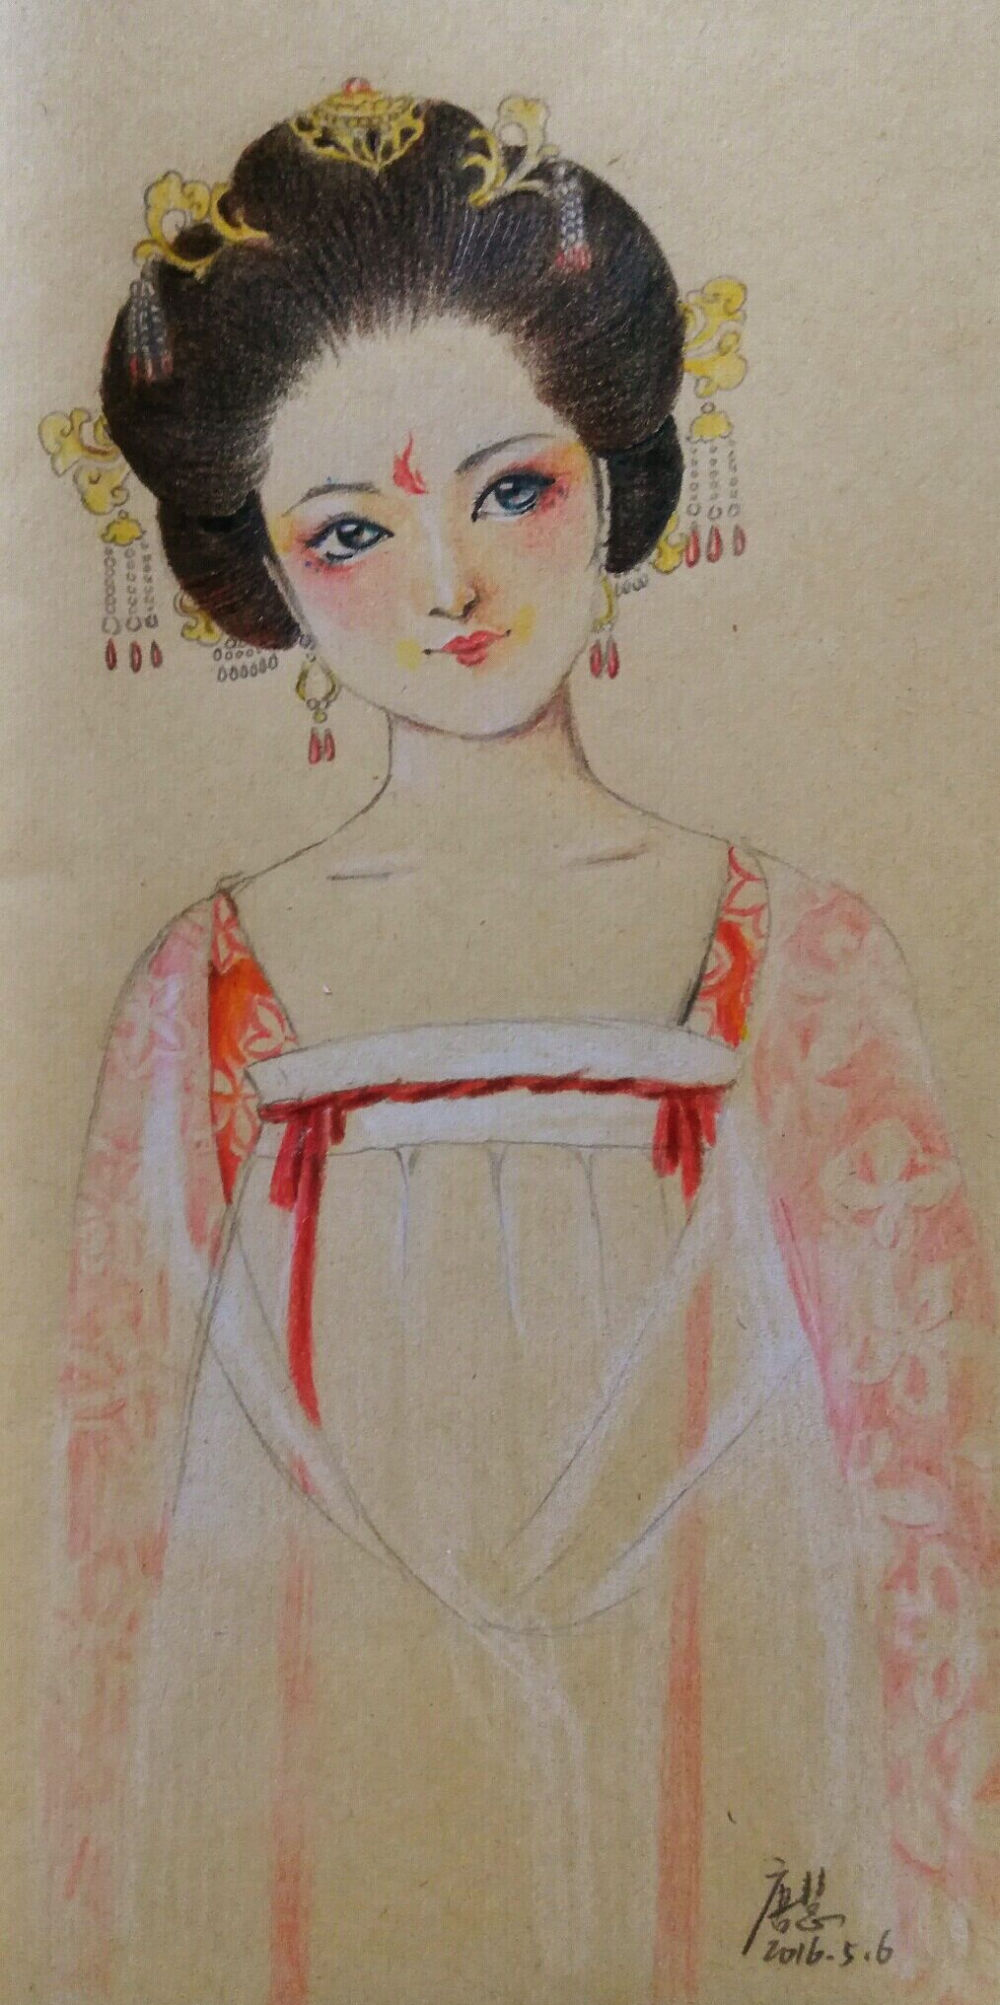 唐代手绘古装美女图图片